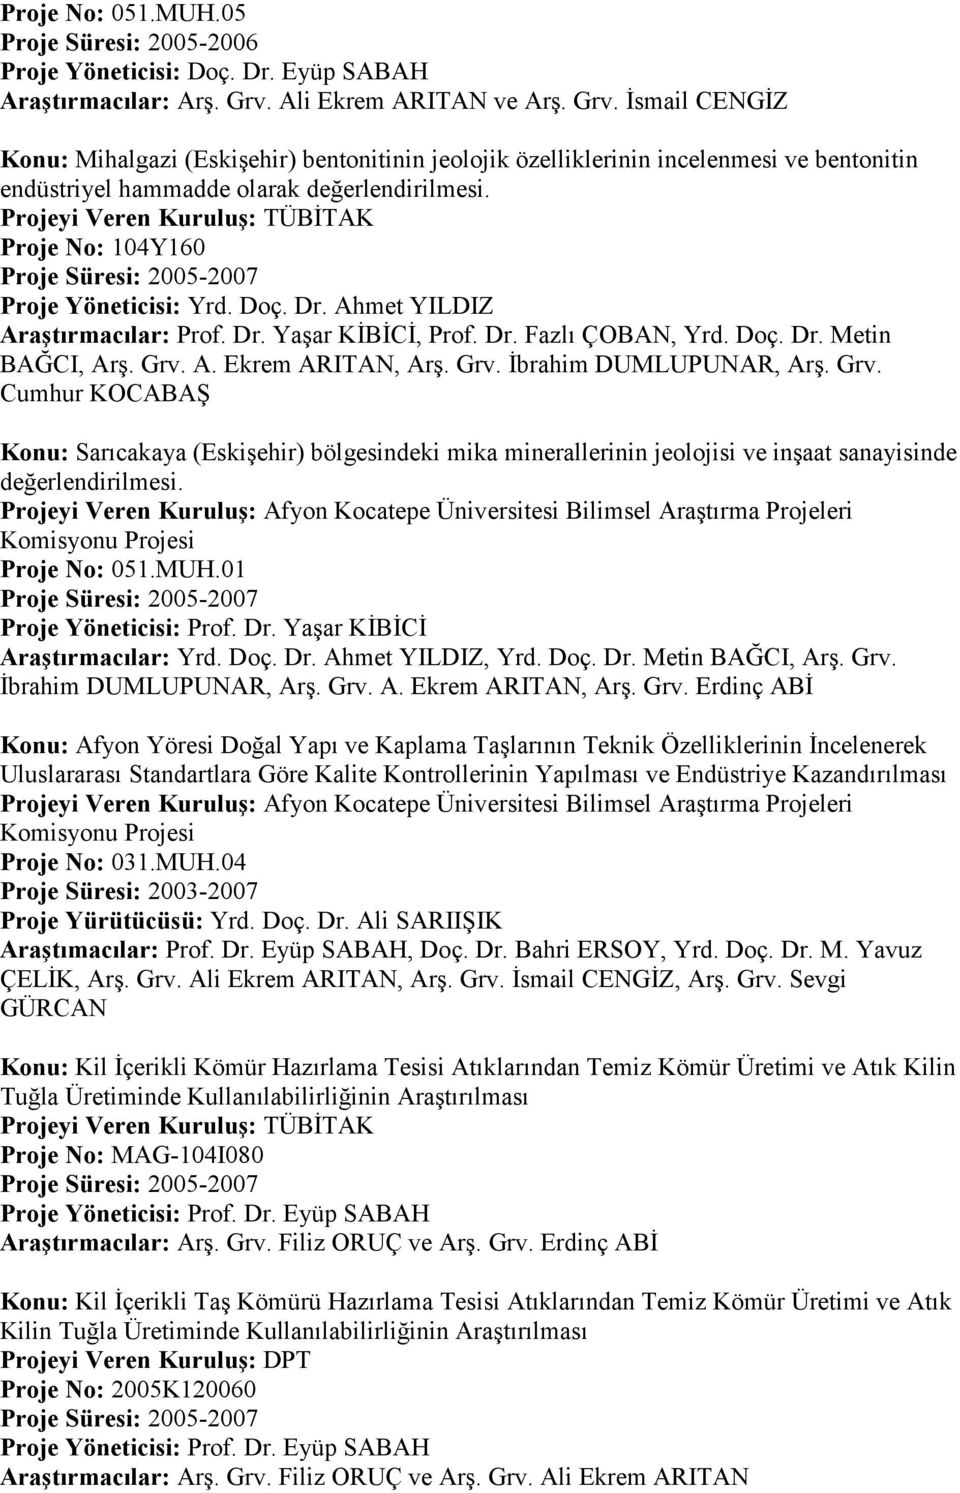 Projeyi Veren Kuruluş: TÜBİTAK Proje No: 104Y160 Proje Süresi: 2005-2007 Proje Yöneticisi: Yrd. Doç. Dr. Ahmet YILDIZ Araştırmacılar: Prof. Dr. Yaşar KİBİCİ, Prof. Dr. Fazlı ÇOBAN, Yrd. Doç. Dr. Metin BAĞCI, Arş.